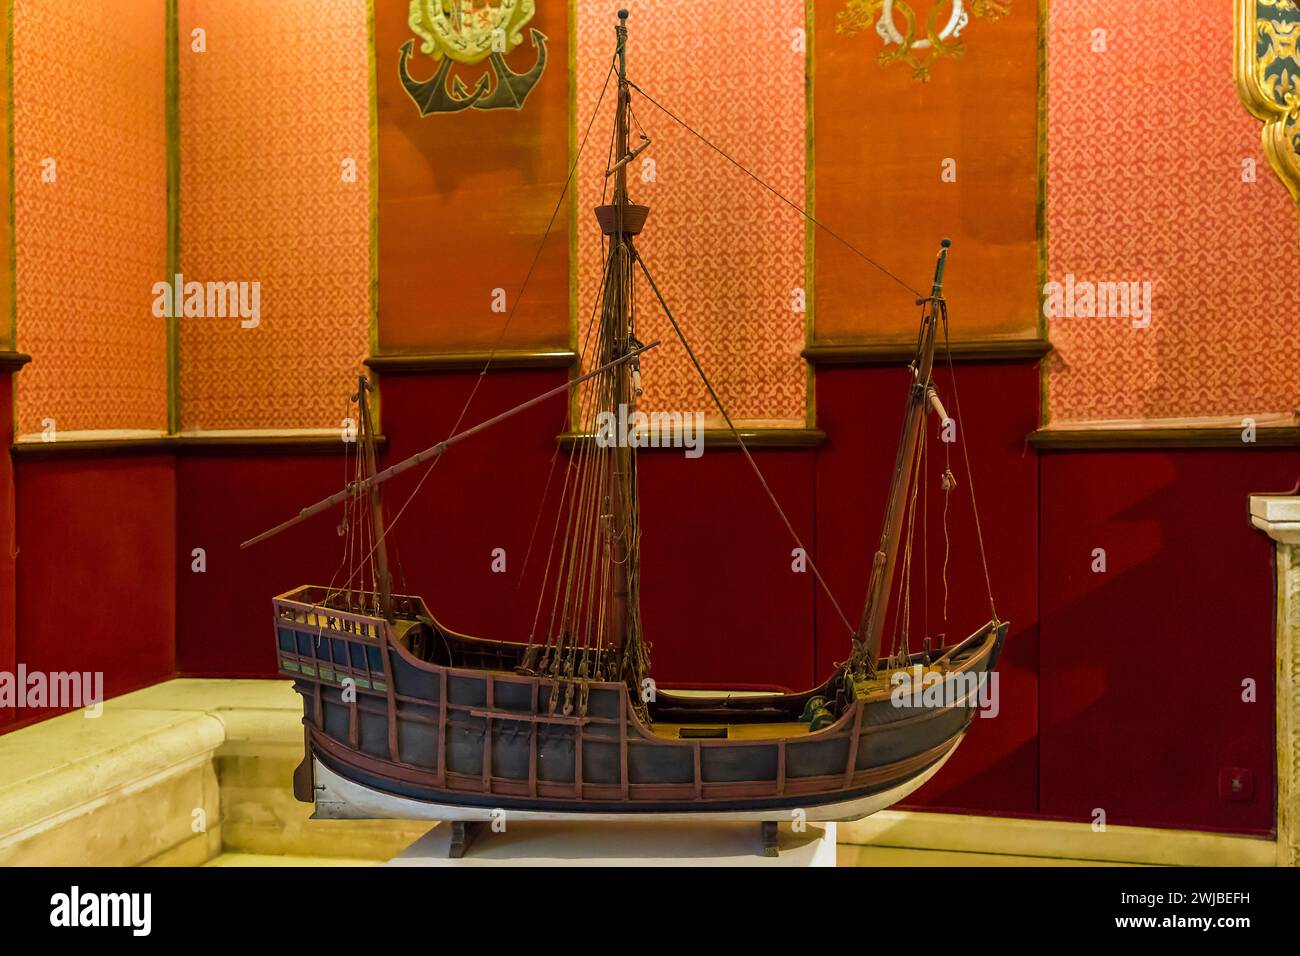 SIVIGLIA, SPAGNA - 21 MAGGIO 2017: Questo è un modello di nave mercantile medievale spagnola nell'esposizione della camera di commercio all'Alcazar. Foto Stock